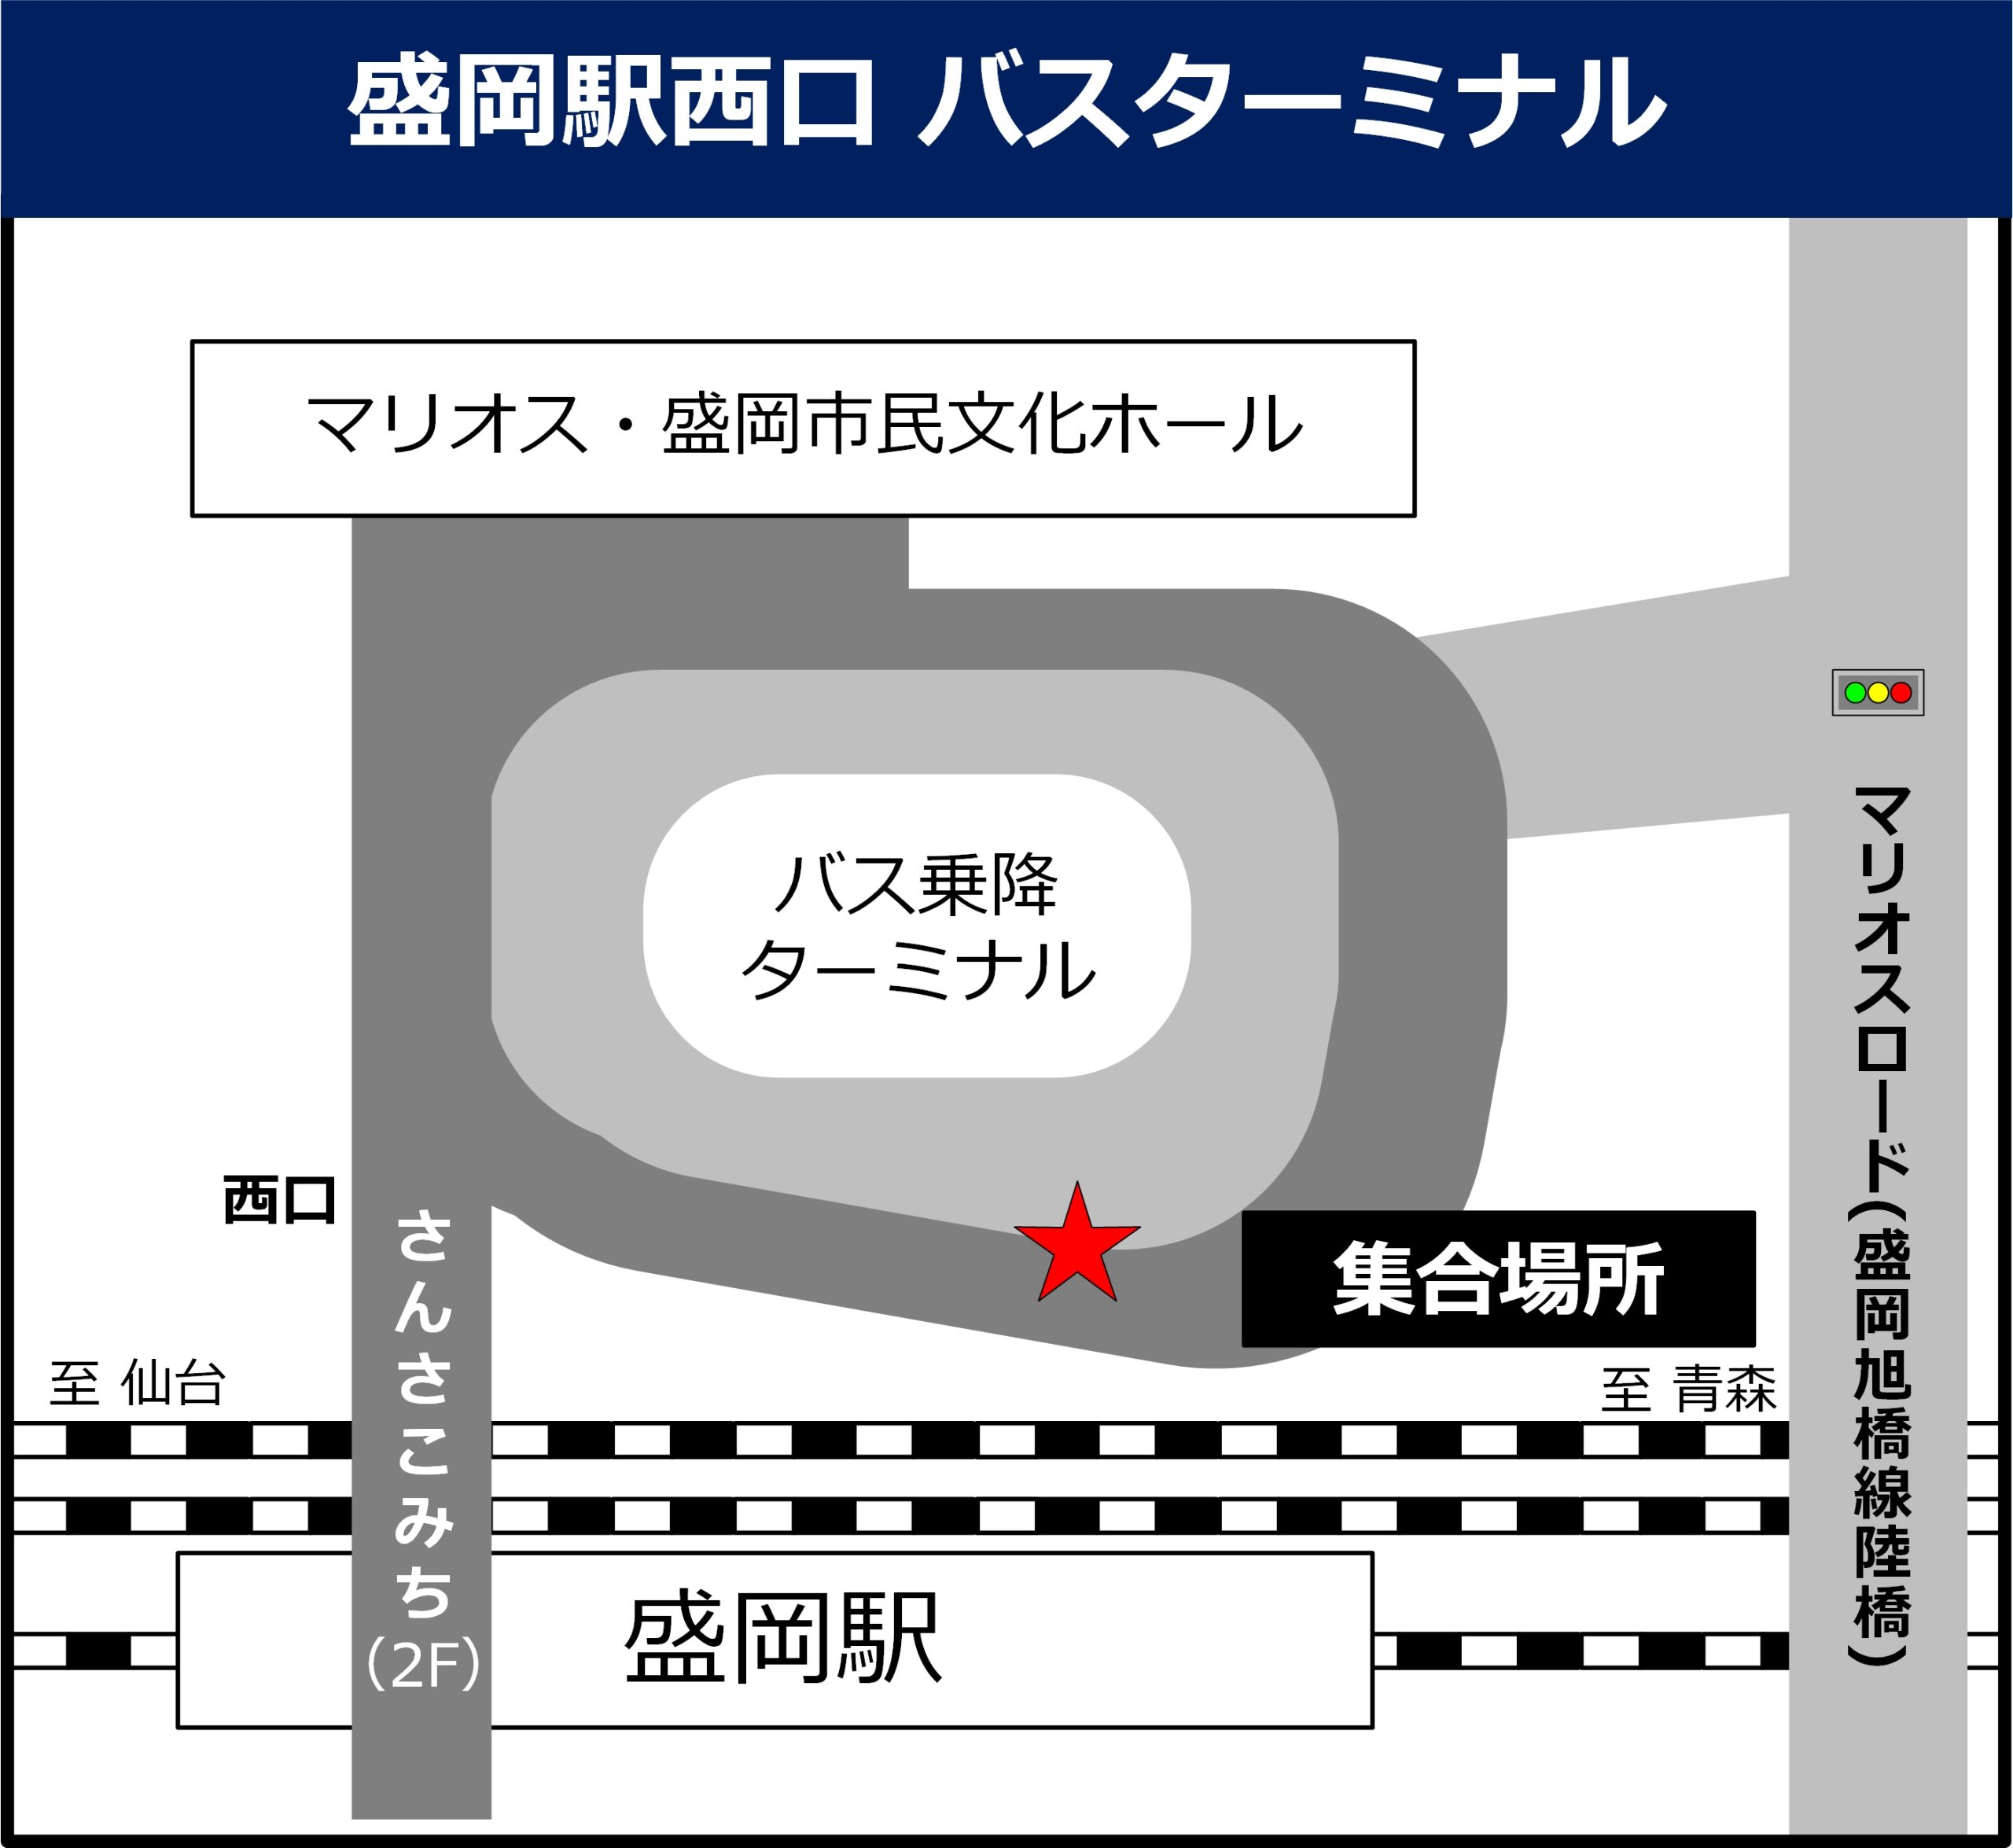 盛岡駅西口バスターミナルの地図